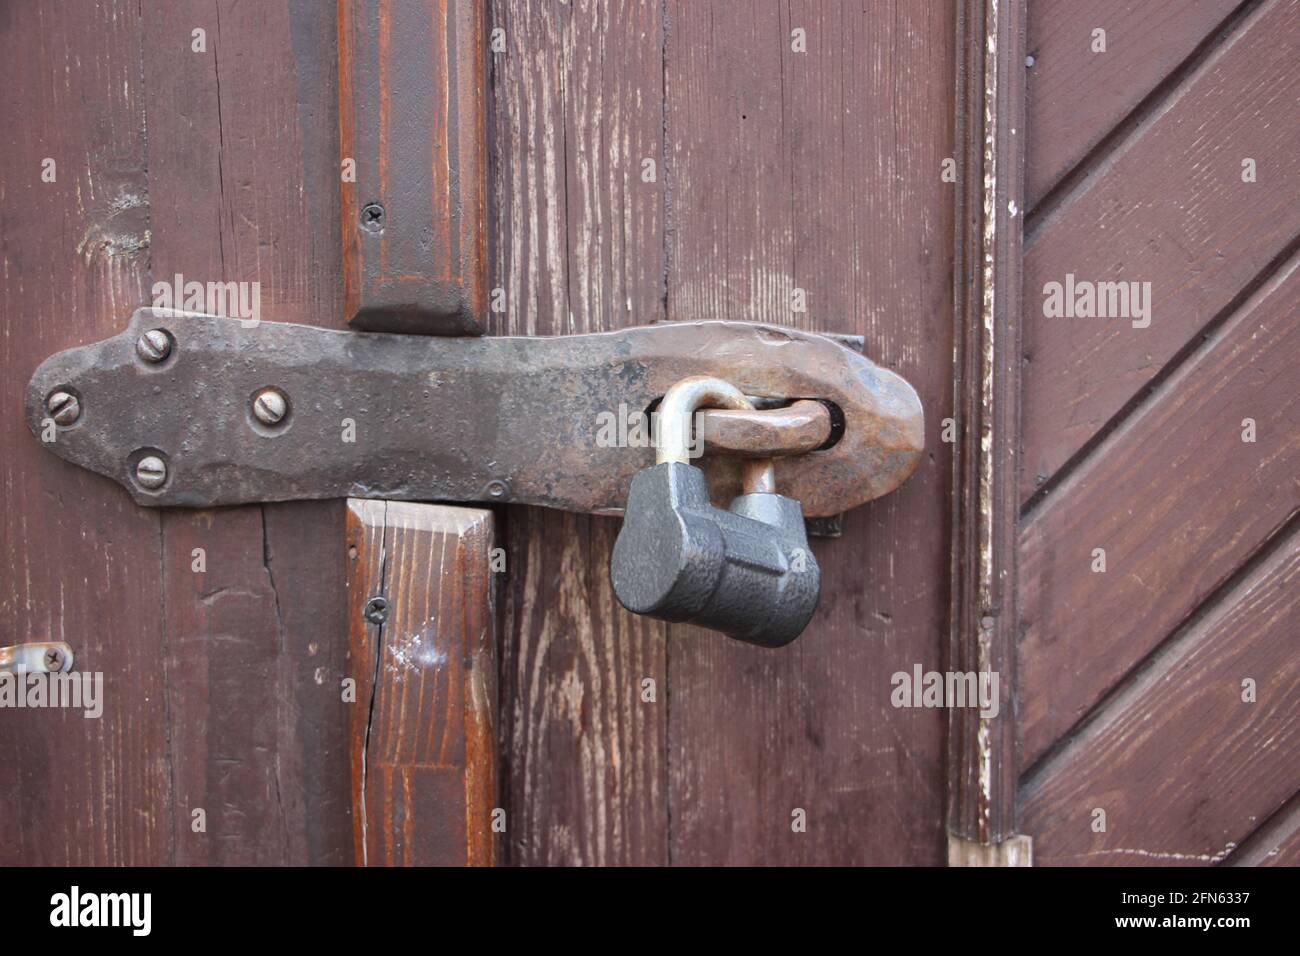 Hanging lock on brown ancient vintage door. locked old wooden door. Confidential information security concept. Stock Photo